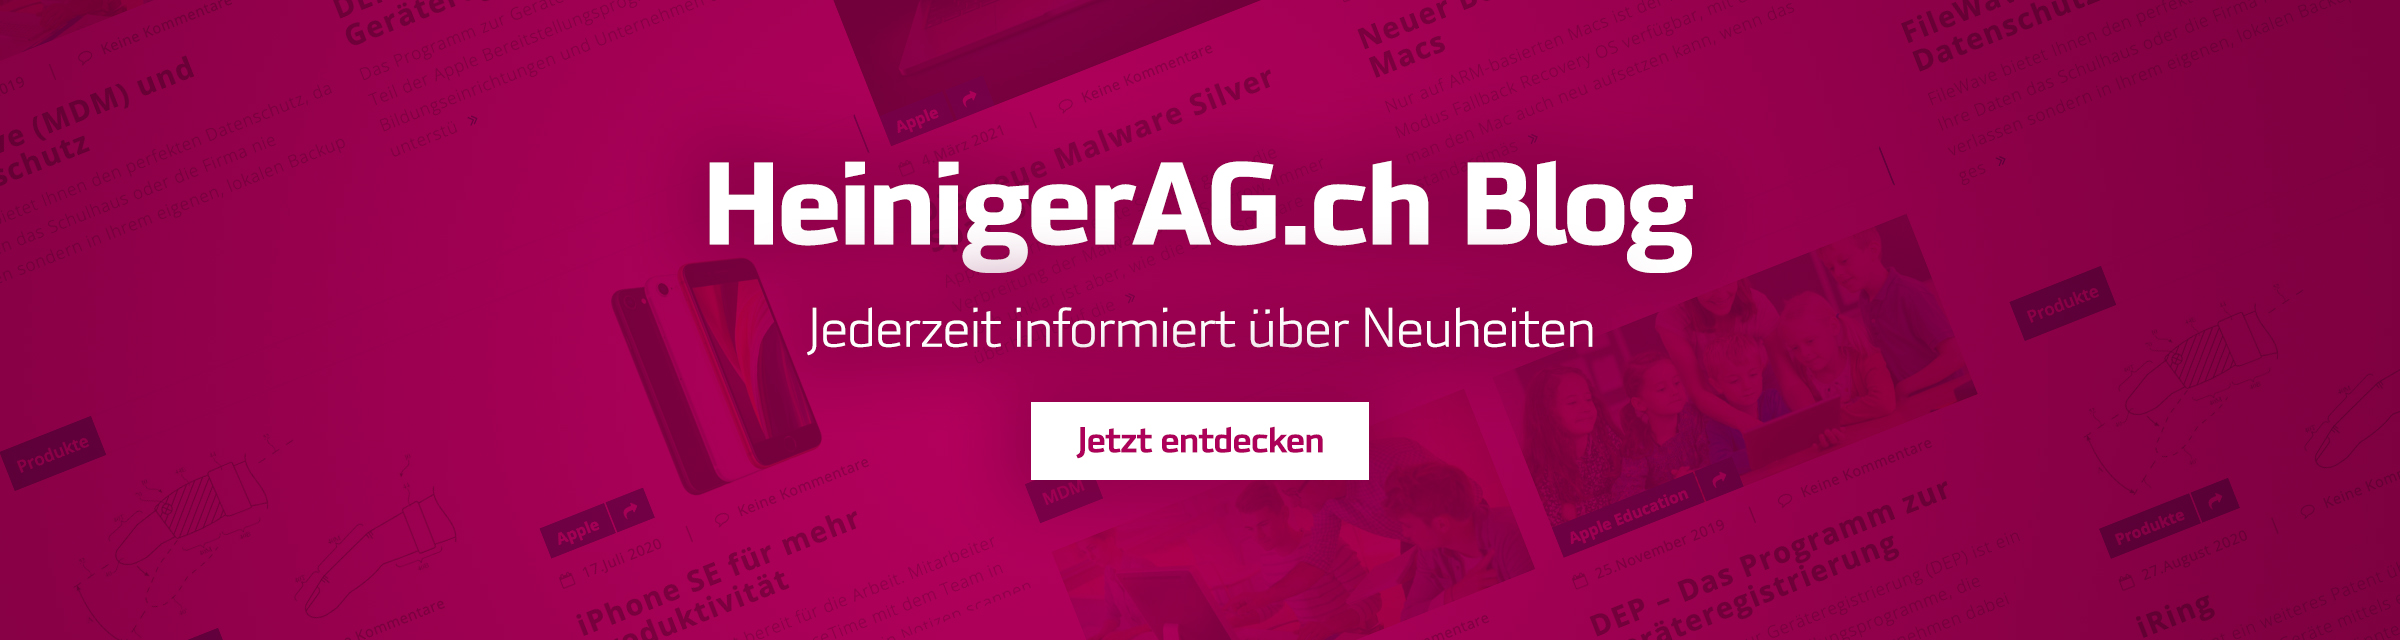 Heiniger Blog